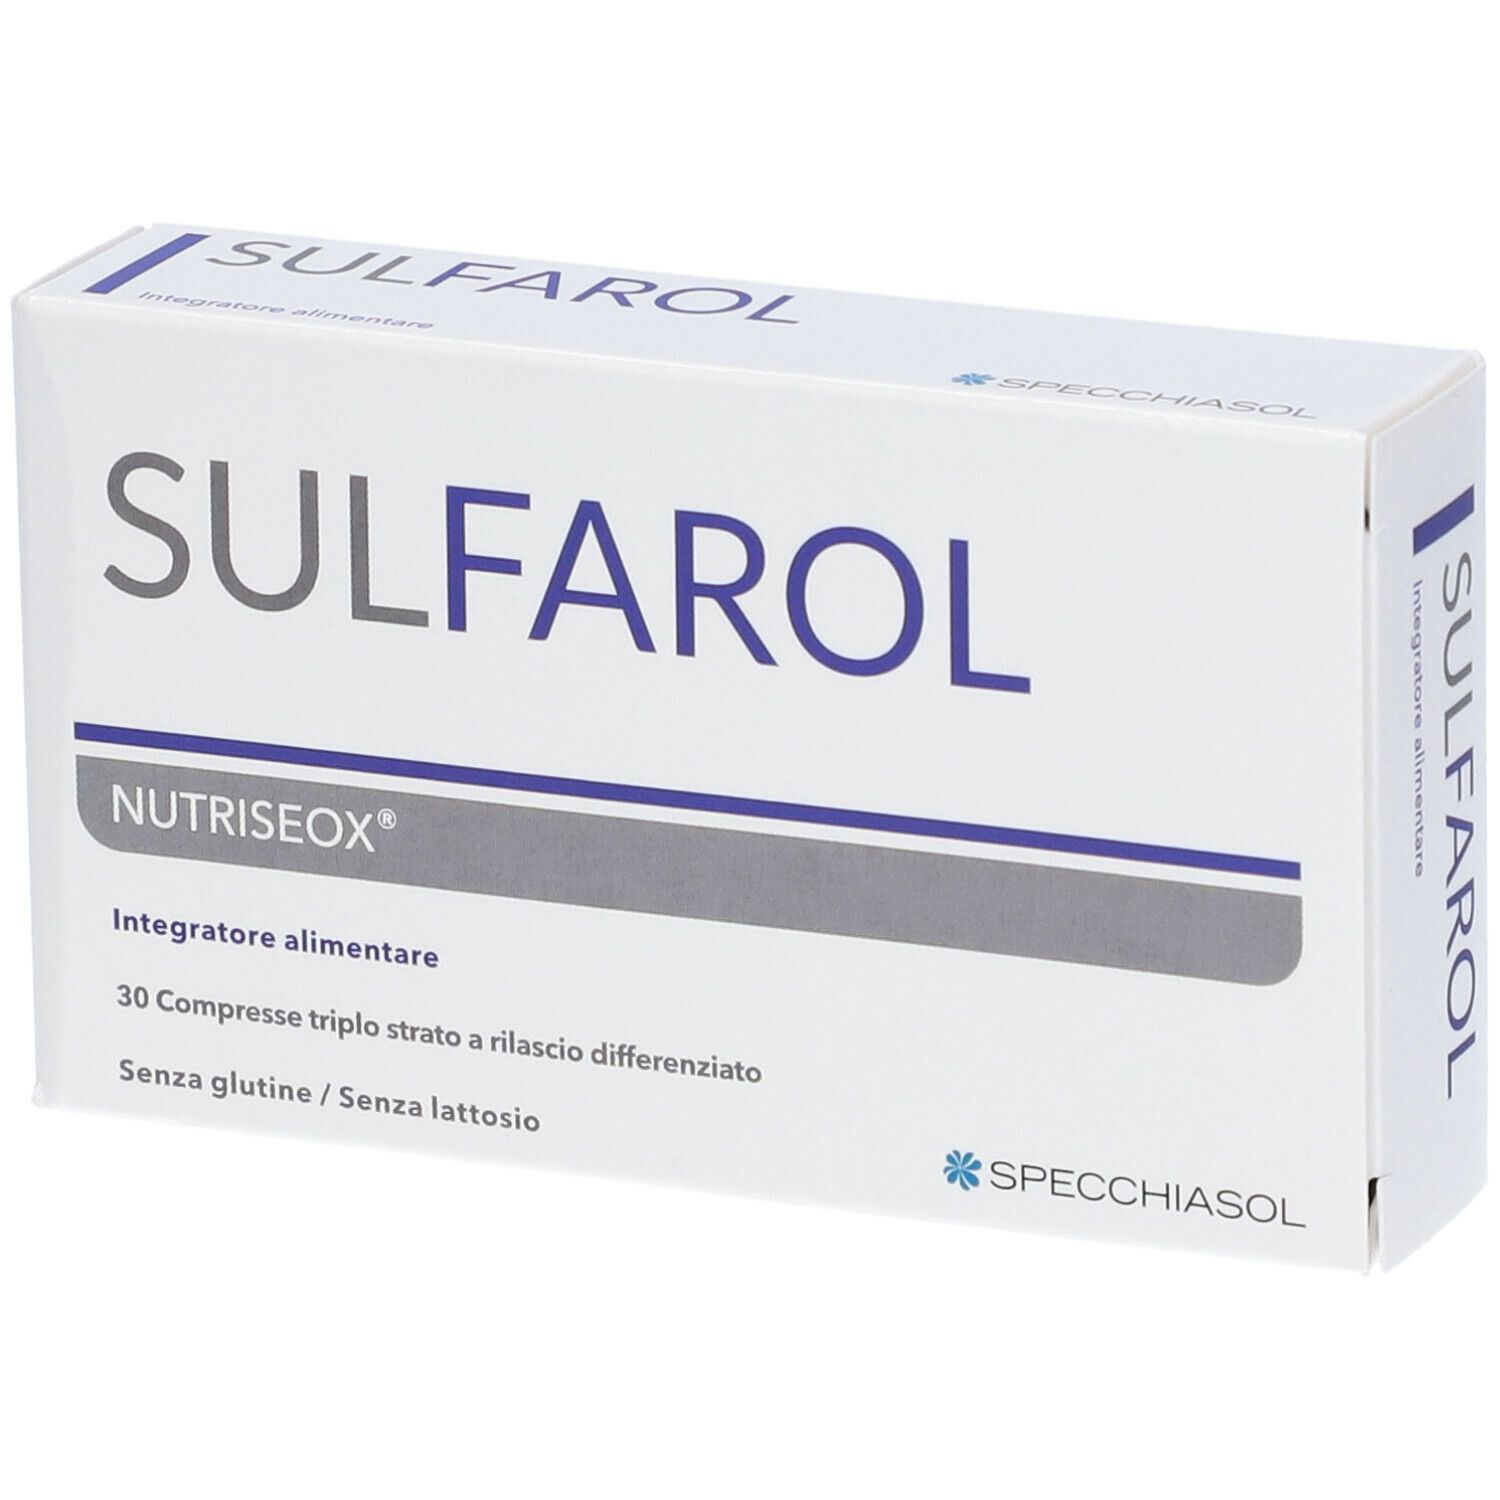 Specchiasol Sulfarol NUTRISEOX® Integratore Alimentare